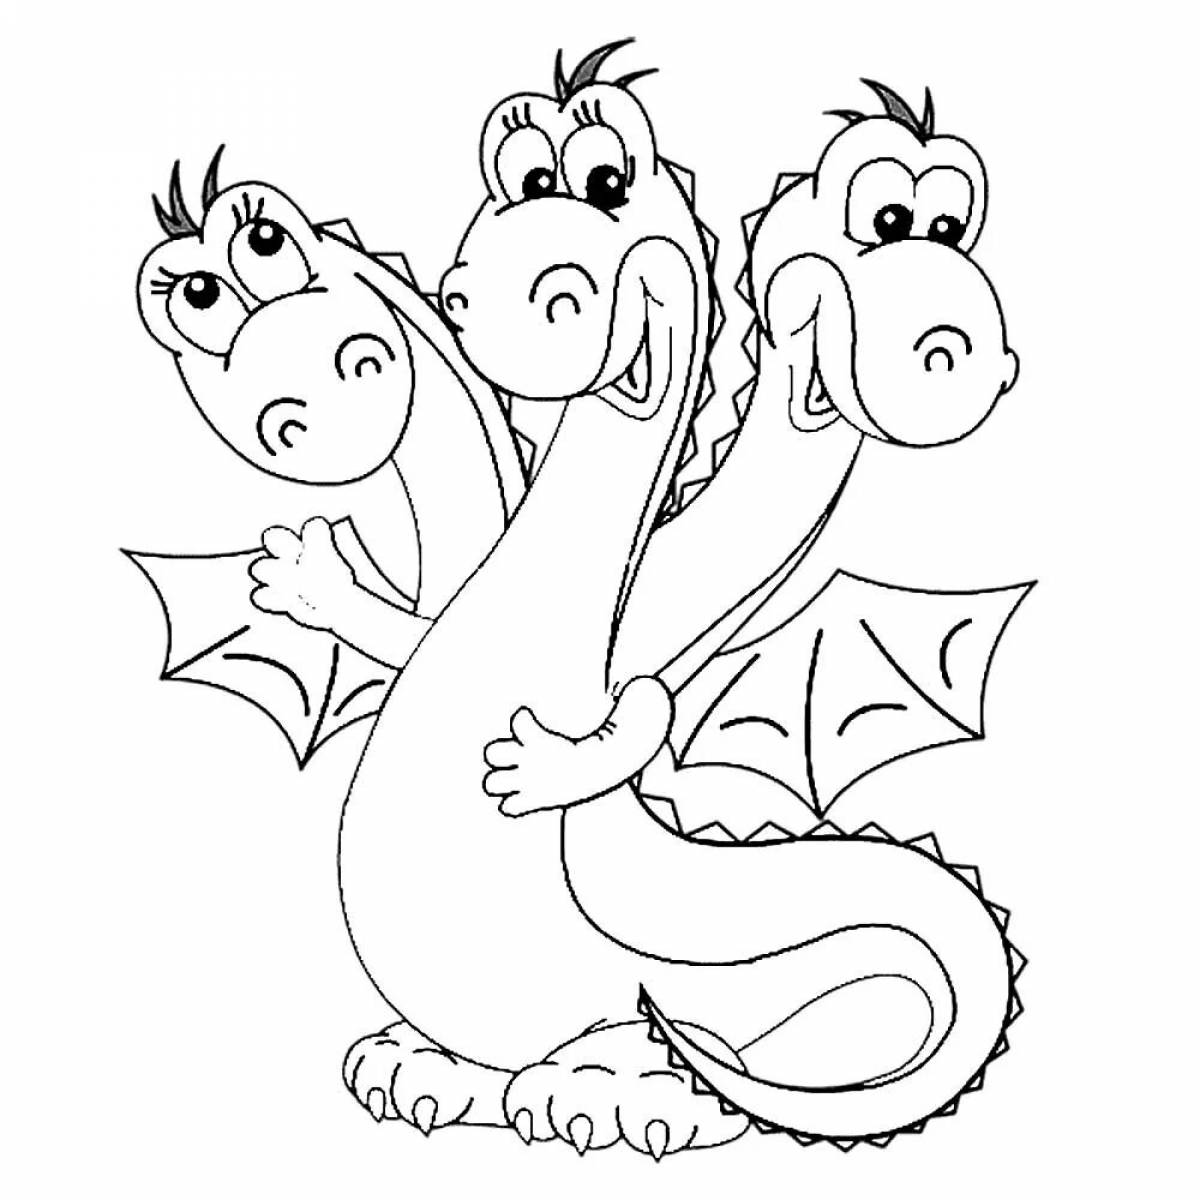 Three-headed dragon #11